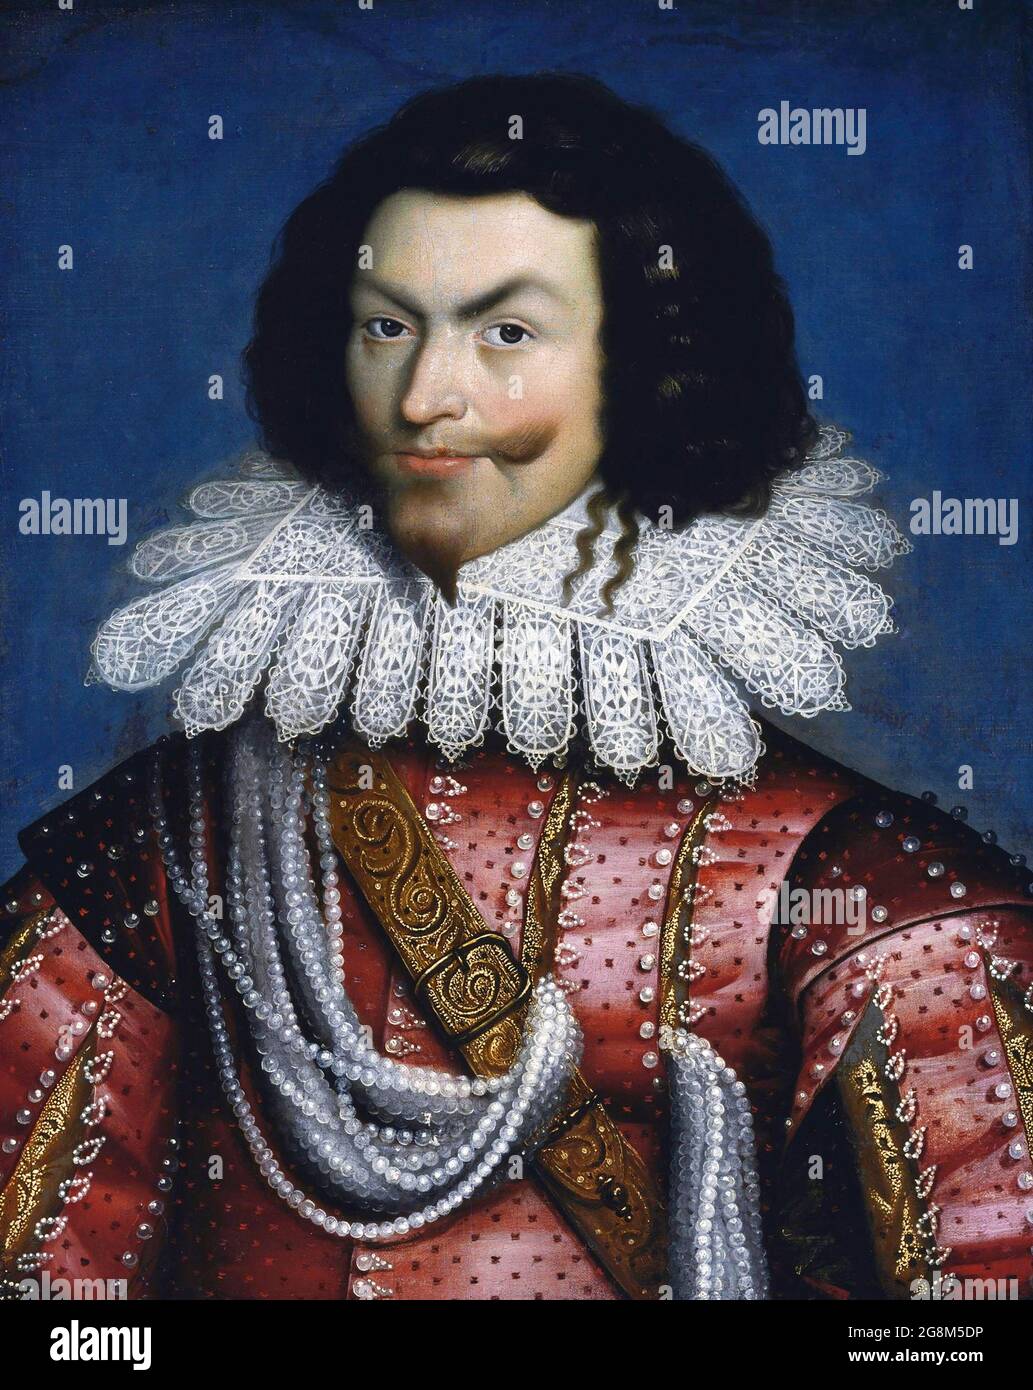 Portrait de George Villiers, 1st duc de Buckingham (1592-1628) par Paul Van Somer, huile sur bois. Buckingham était l'un des favoris du roi James VI et moi-même et j'ai eu la réputation d'avoir été son amant. Banque D'Images